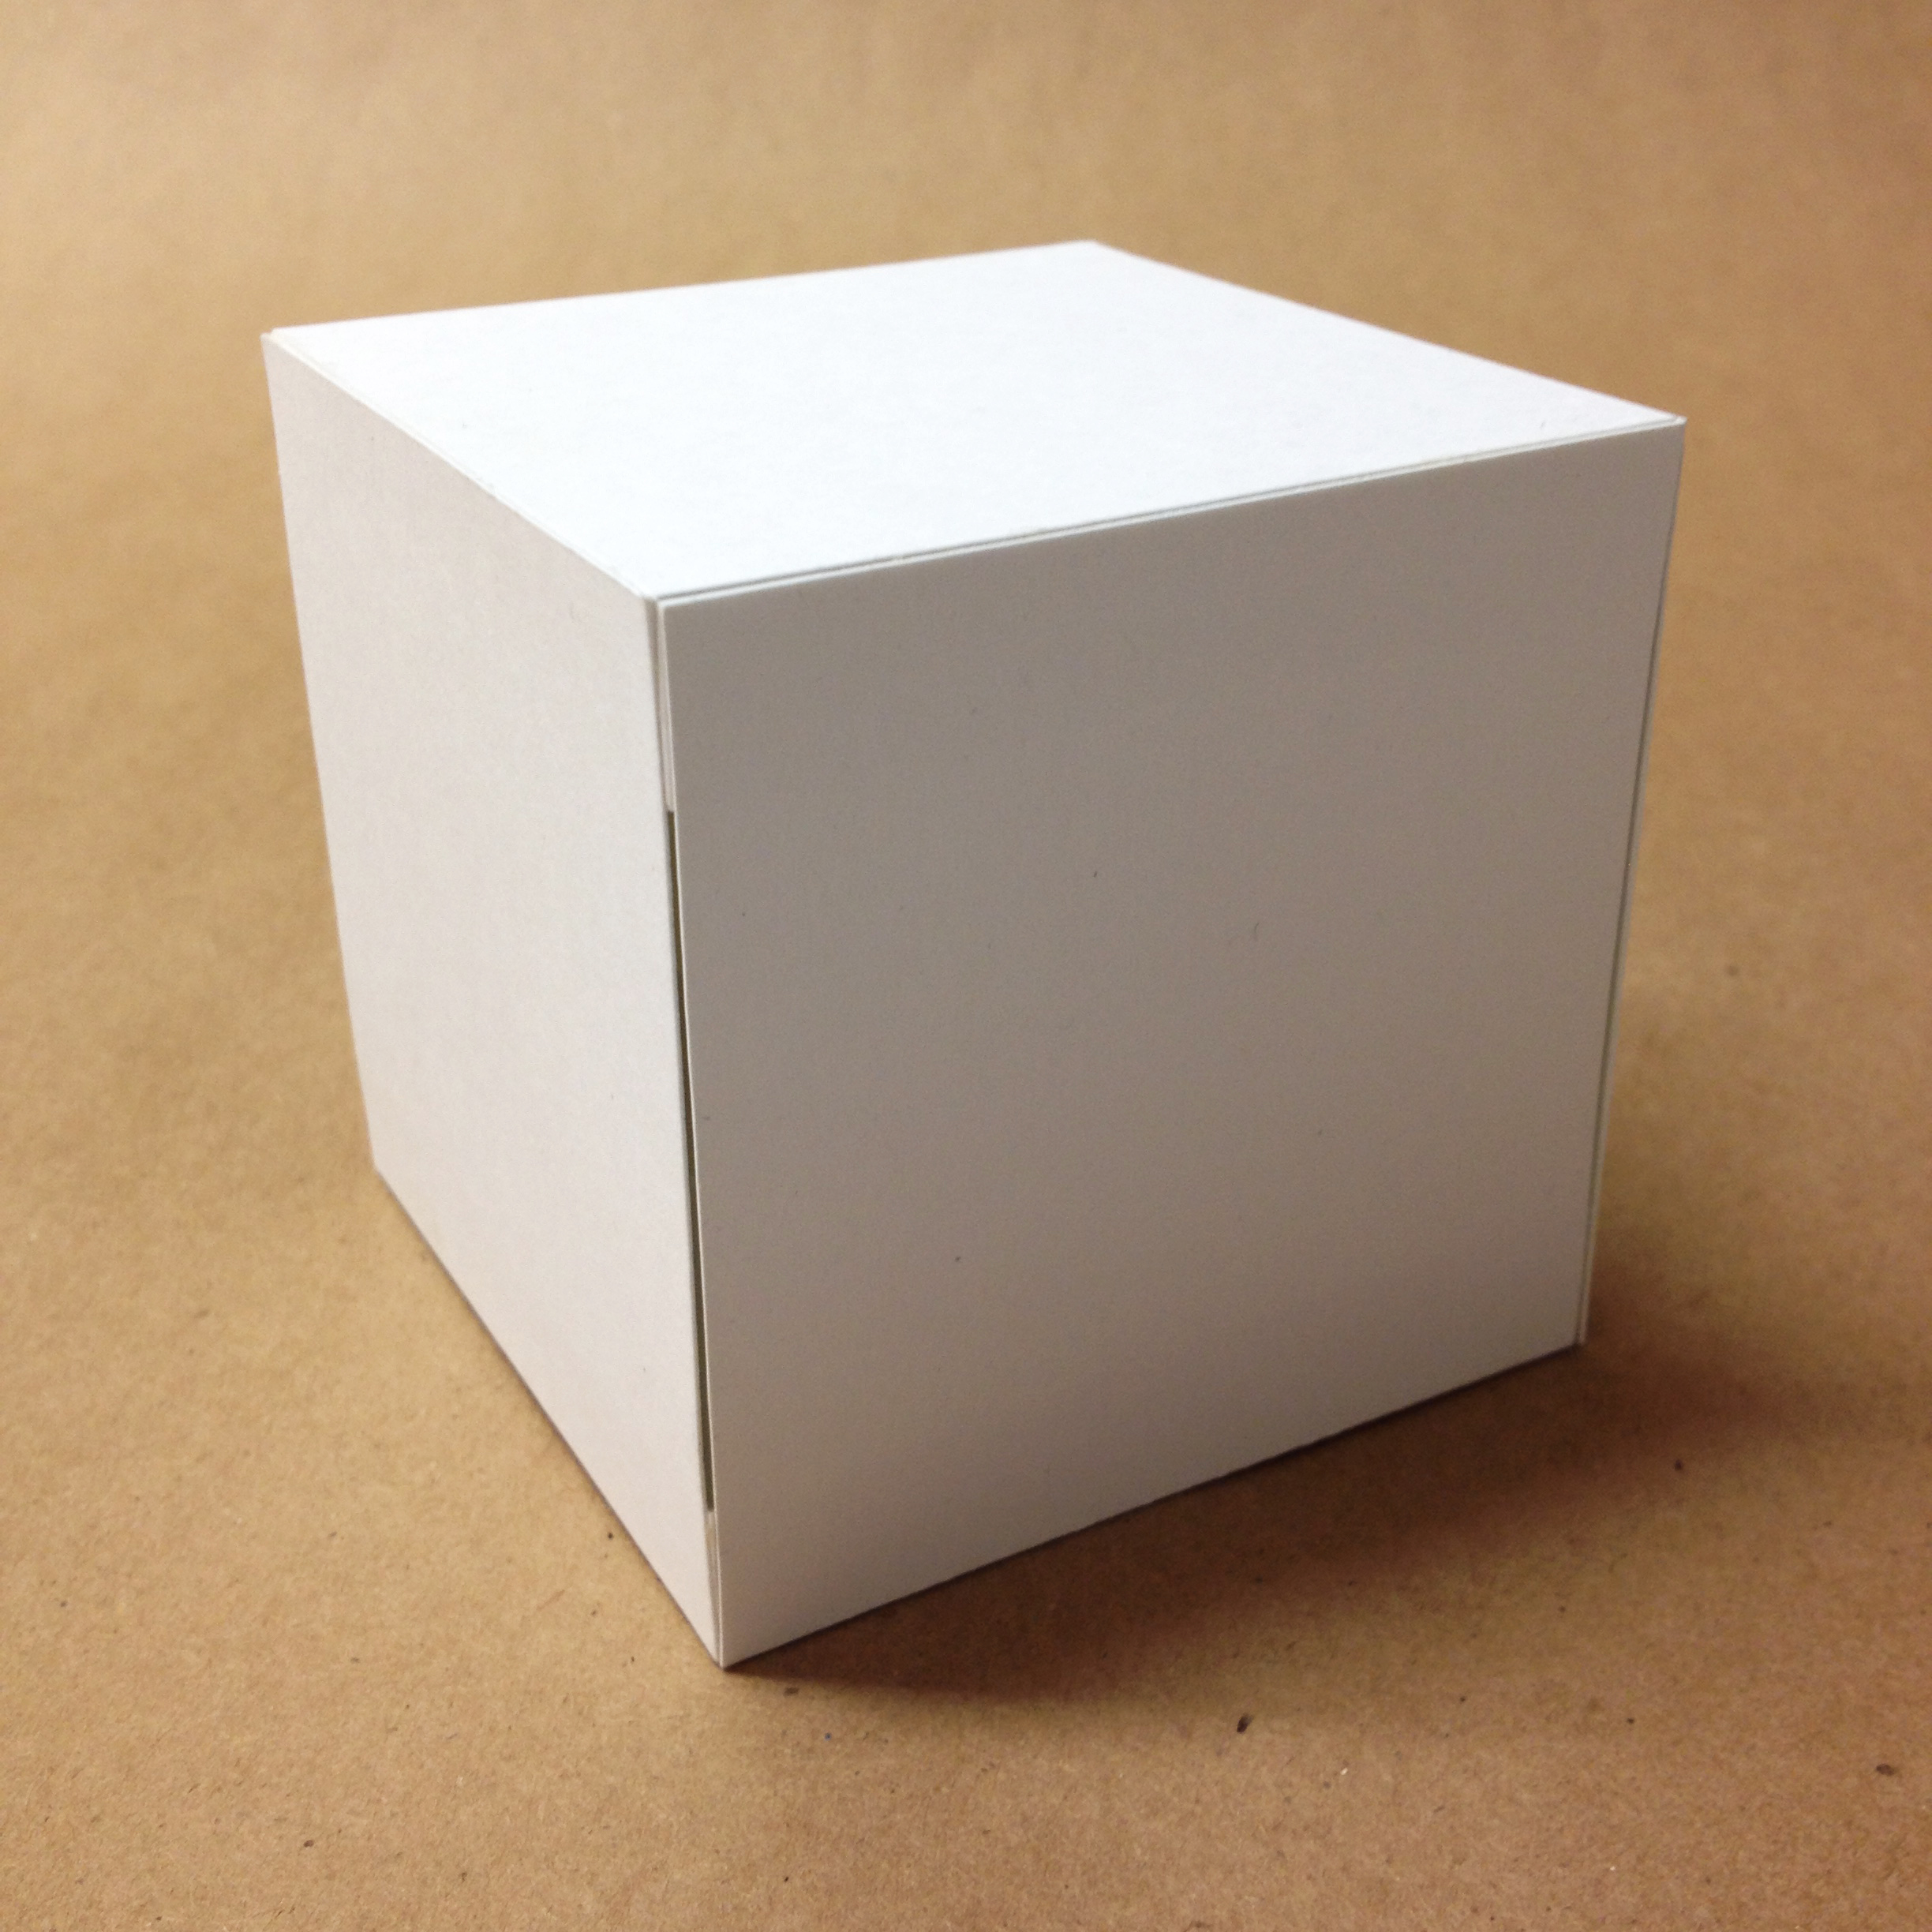 Объемная форма куба. Куб из бумаги. Куб из картона. Кубы из картона. Объемный куб из картона.